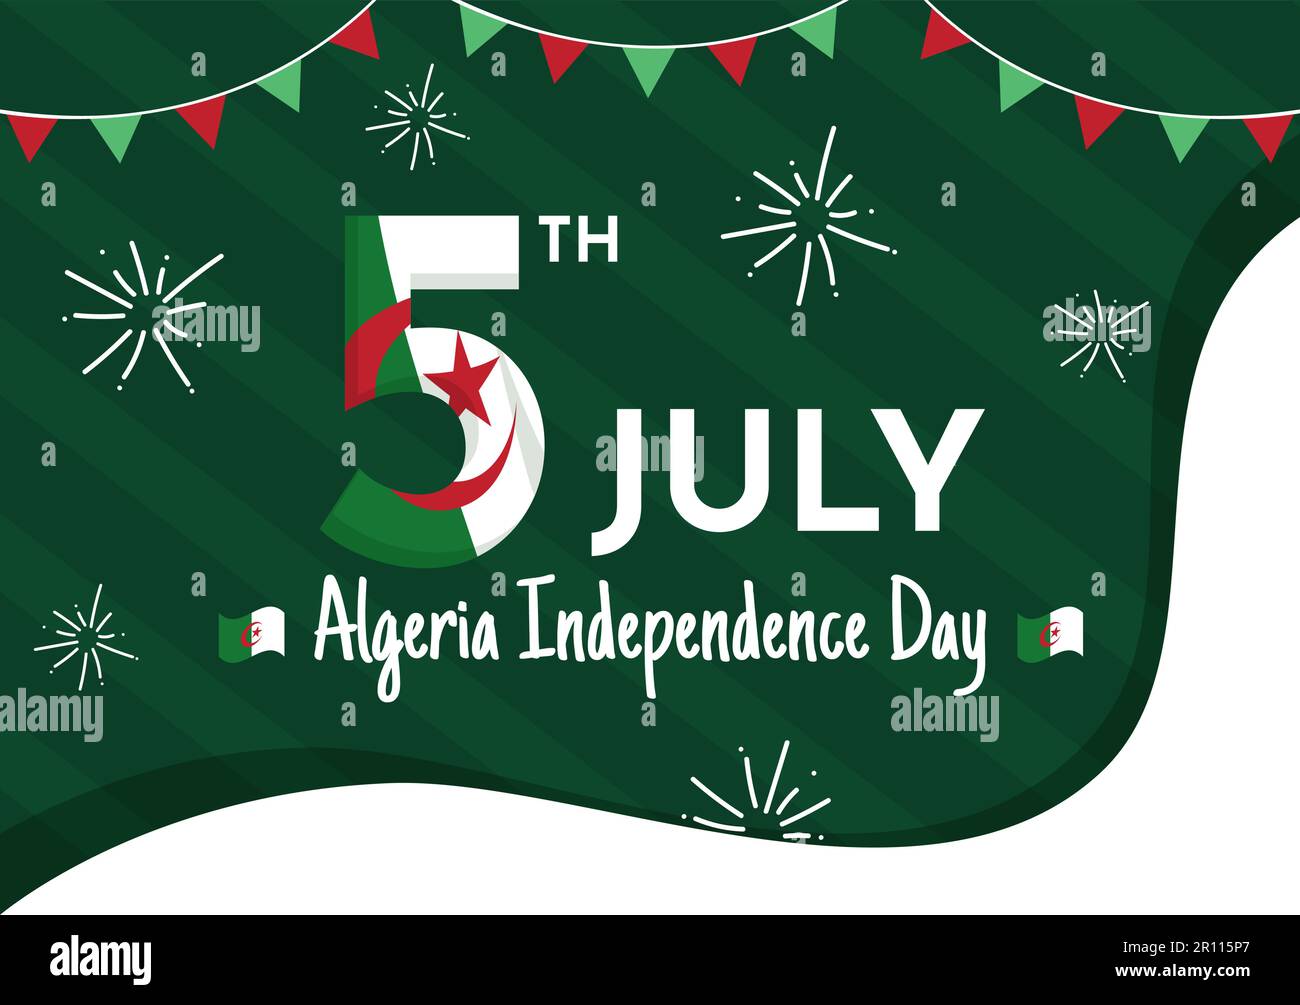 Happy Algérie Independence Day Vector Illustration avec drapeau de tissage en crachoir plat page d'arrivée dessinée à la main fond vert modèles Illustration de Vecteur